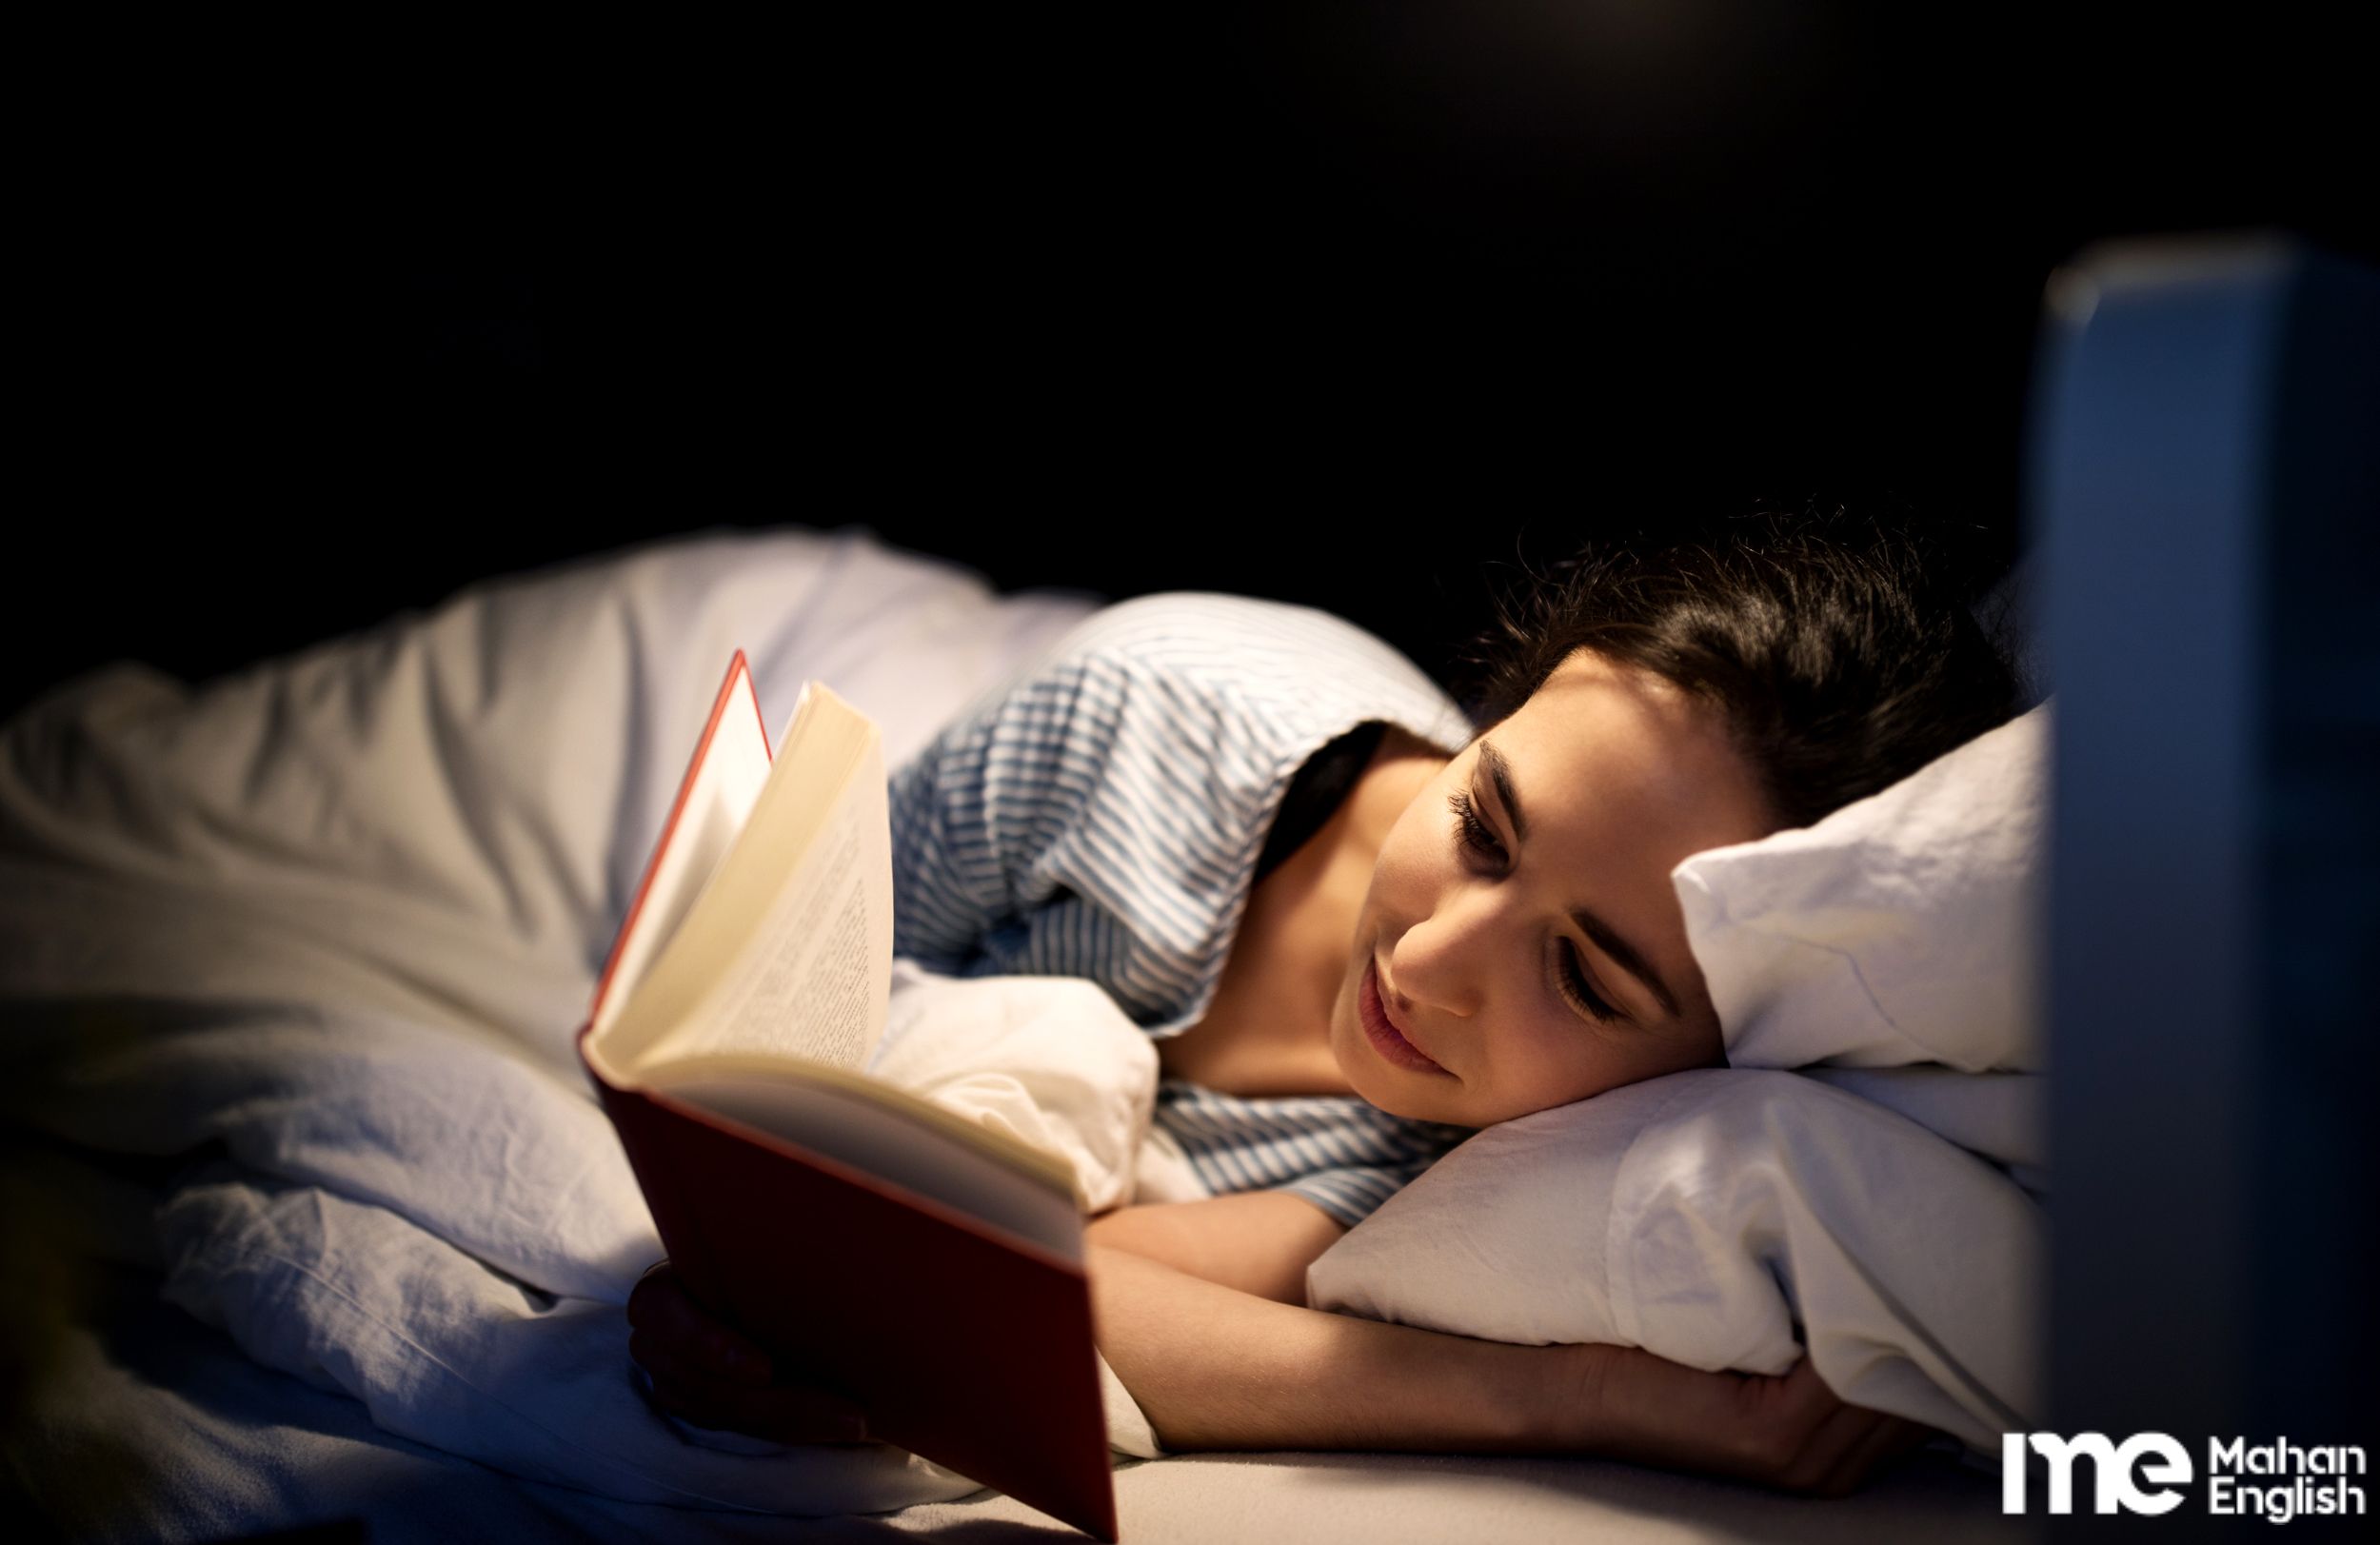 دختری زیبا در تخت خواب خود و در حال مطالعه کتاب قبل از خواب